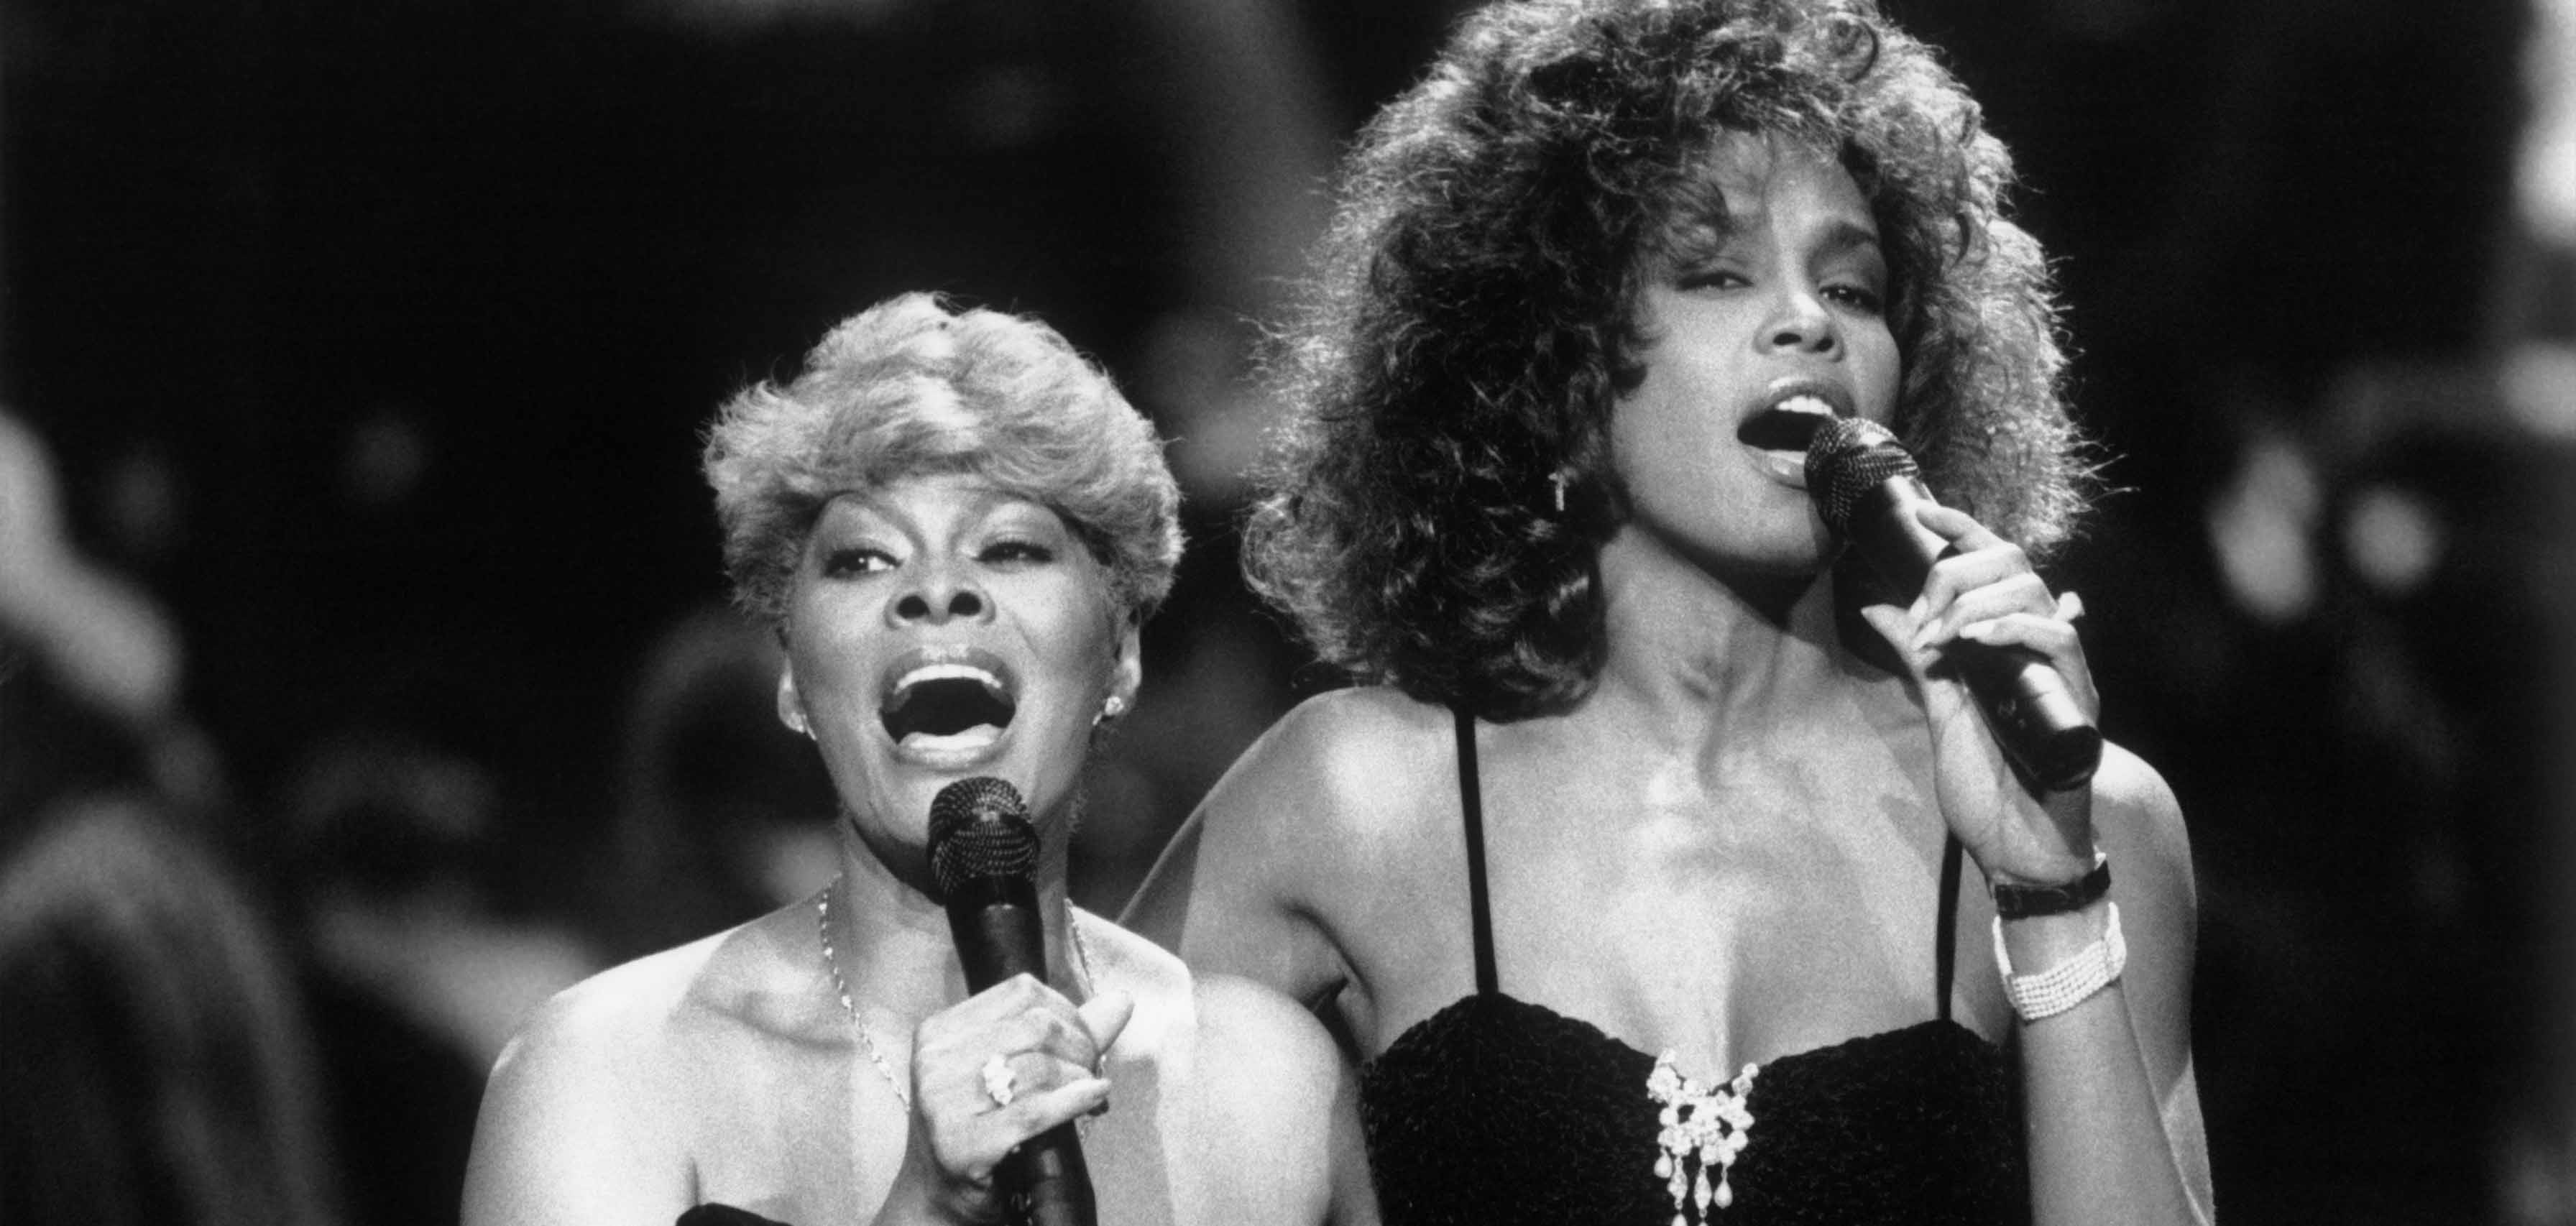 VOILÀ CE QUE LES AMIS SONT : CONCERT DU 15E ANNIVERSAIRE D'ARISTA, Dionne Warwick, Whitney Houston, 1989."